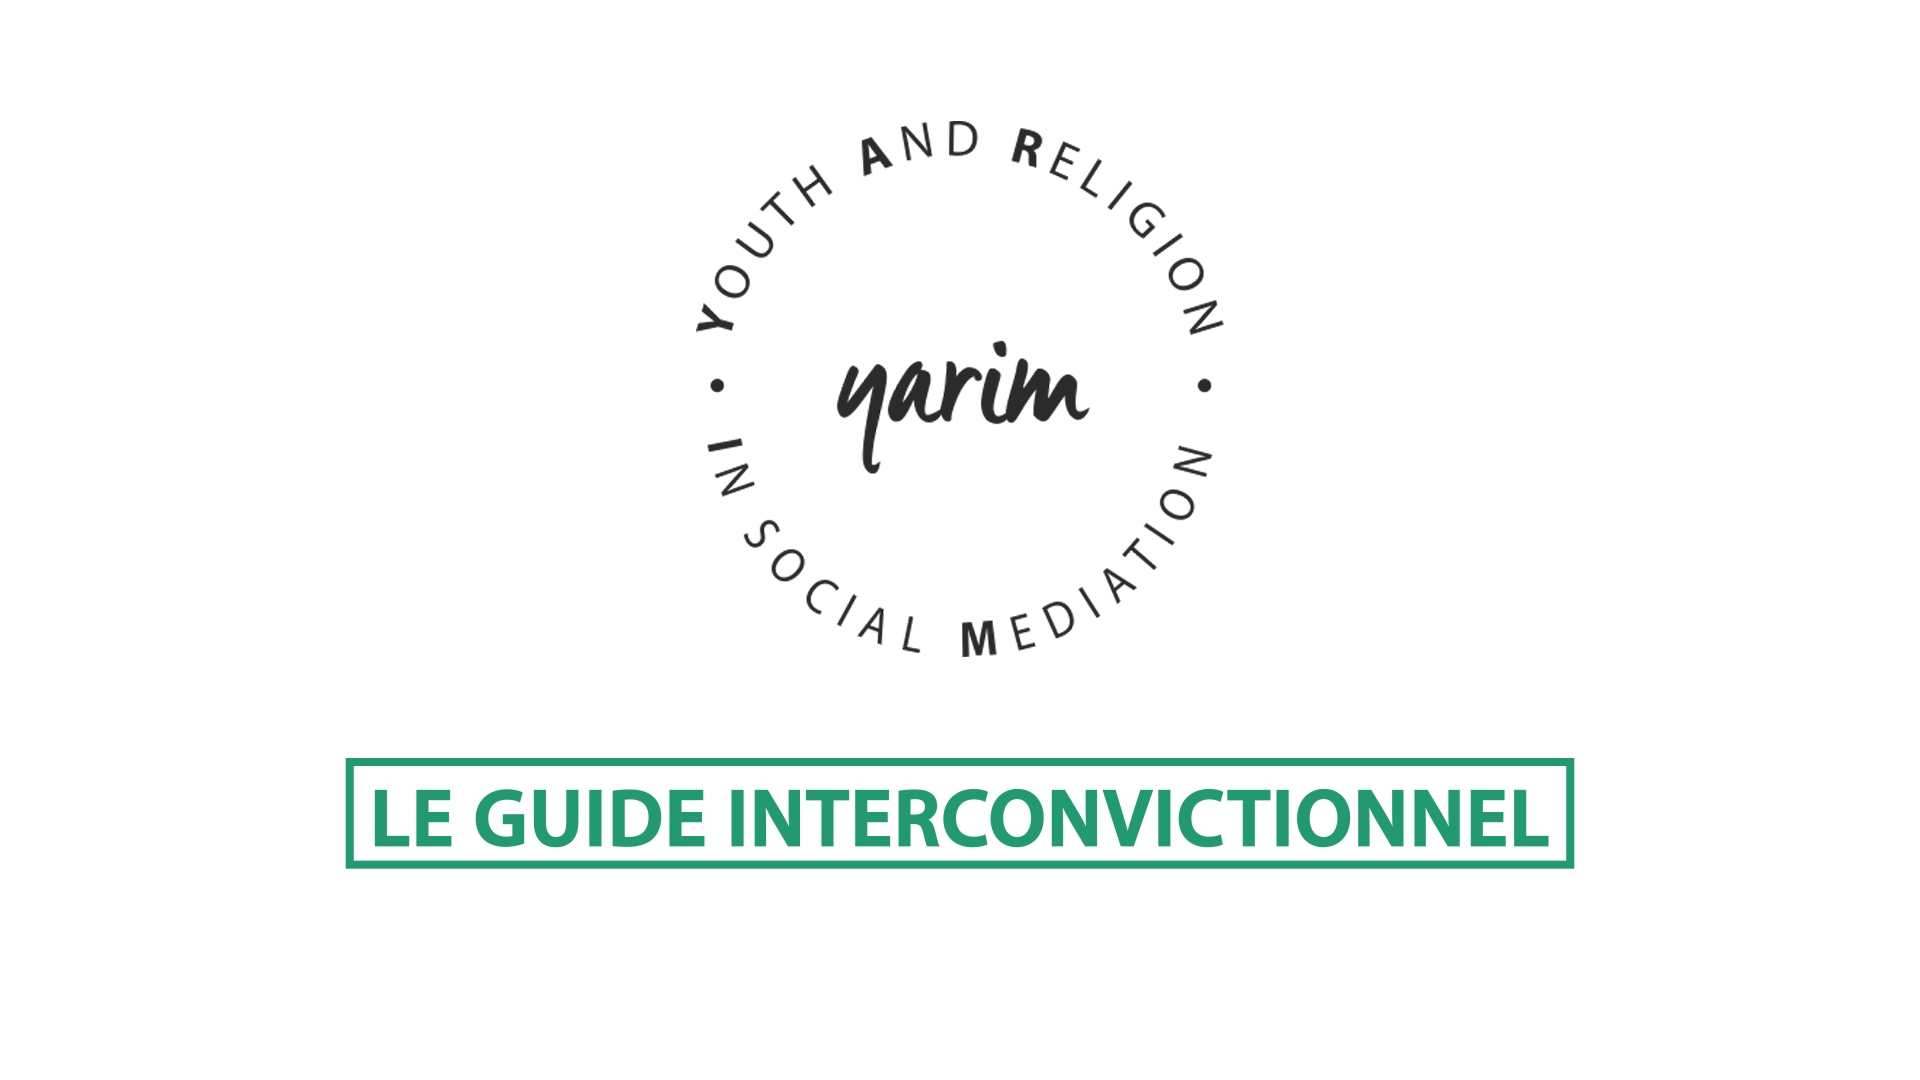 Yarim - Le guide interconvictionnel